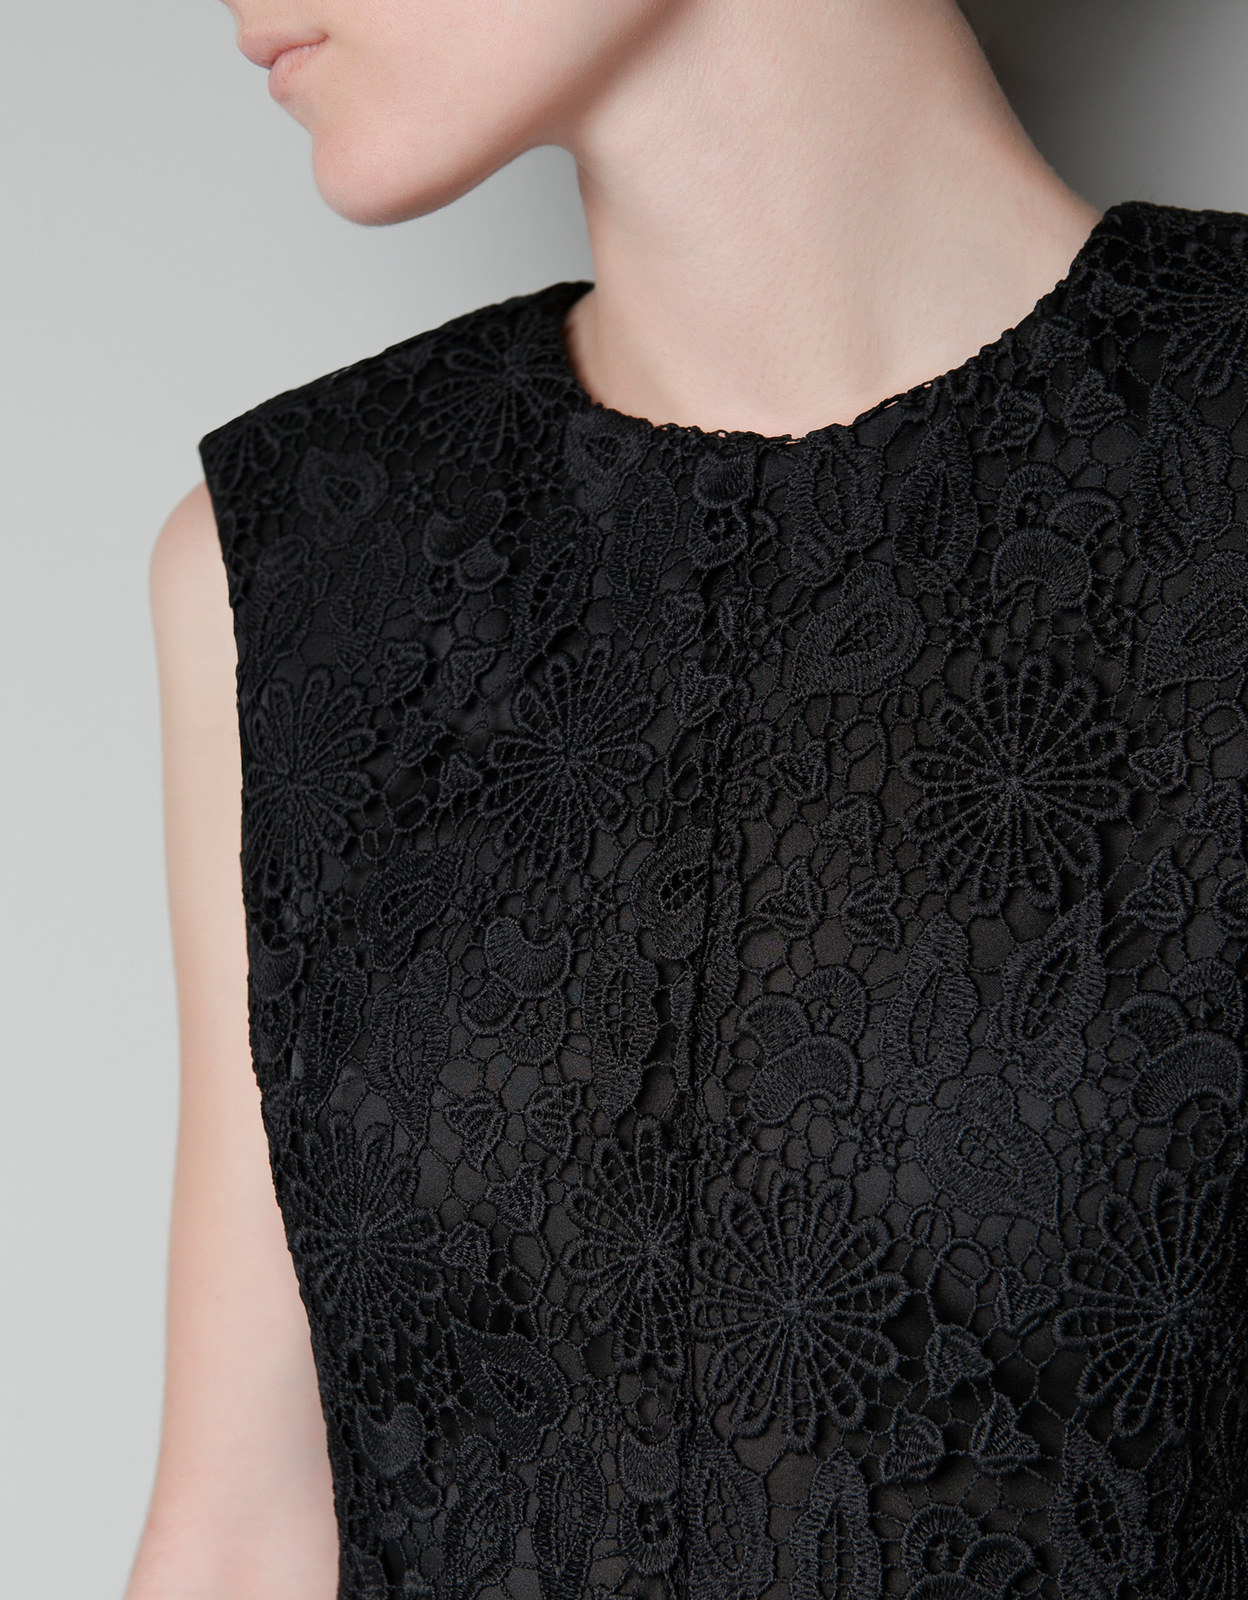 Zara csipkés fekete top 2012.10.21 fotója